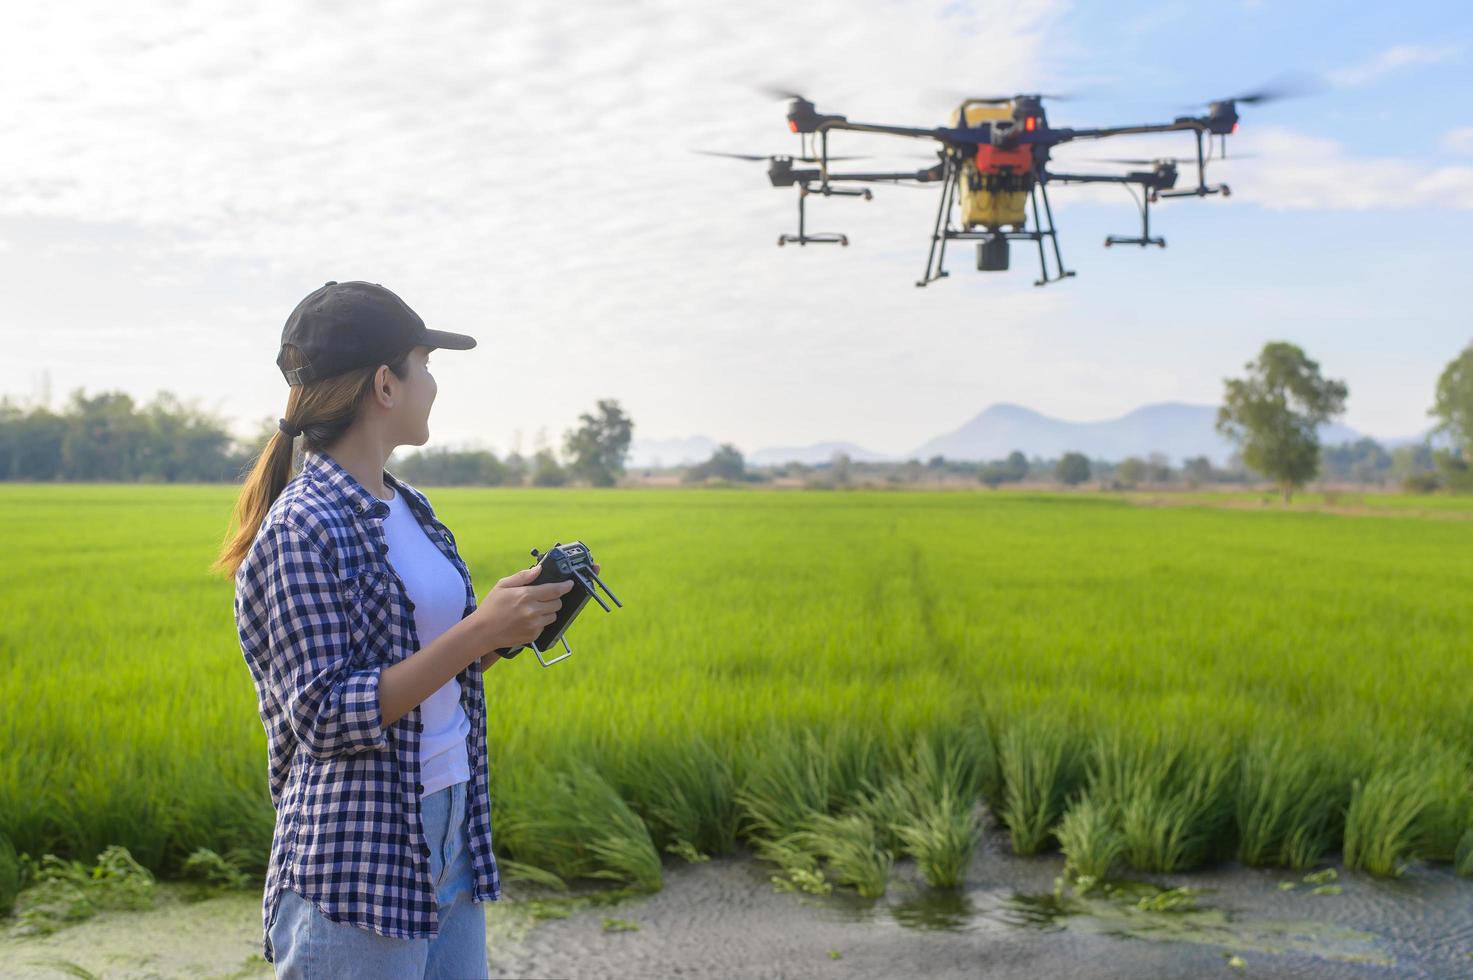 Junger intelligenter Landwirt, der Drohnen kontrolliert, die Düngemittel und Pestizide über Ackerland sprühen, hochtechnologische Innovationen und intelligente Landwirtschaft foto